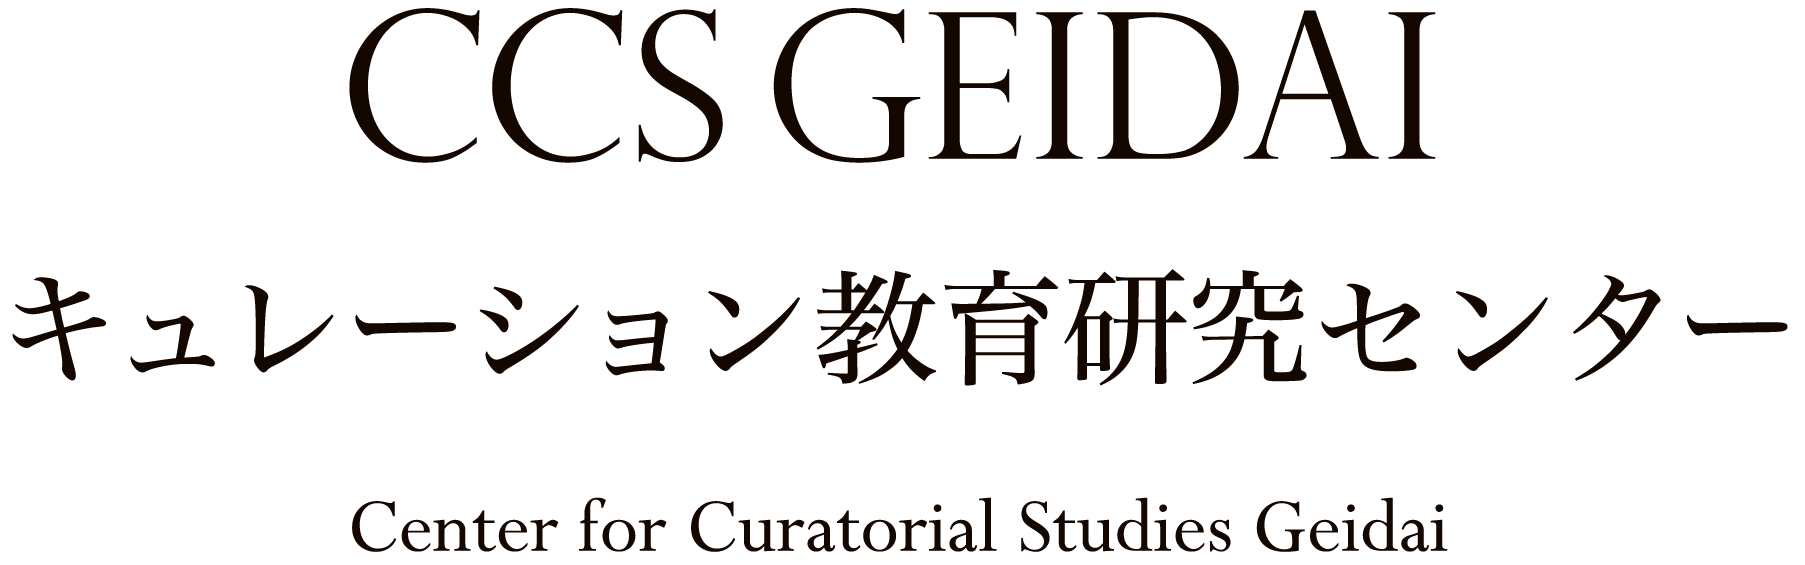 CSS GEIDAI キュレーション教育研究センター